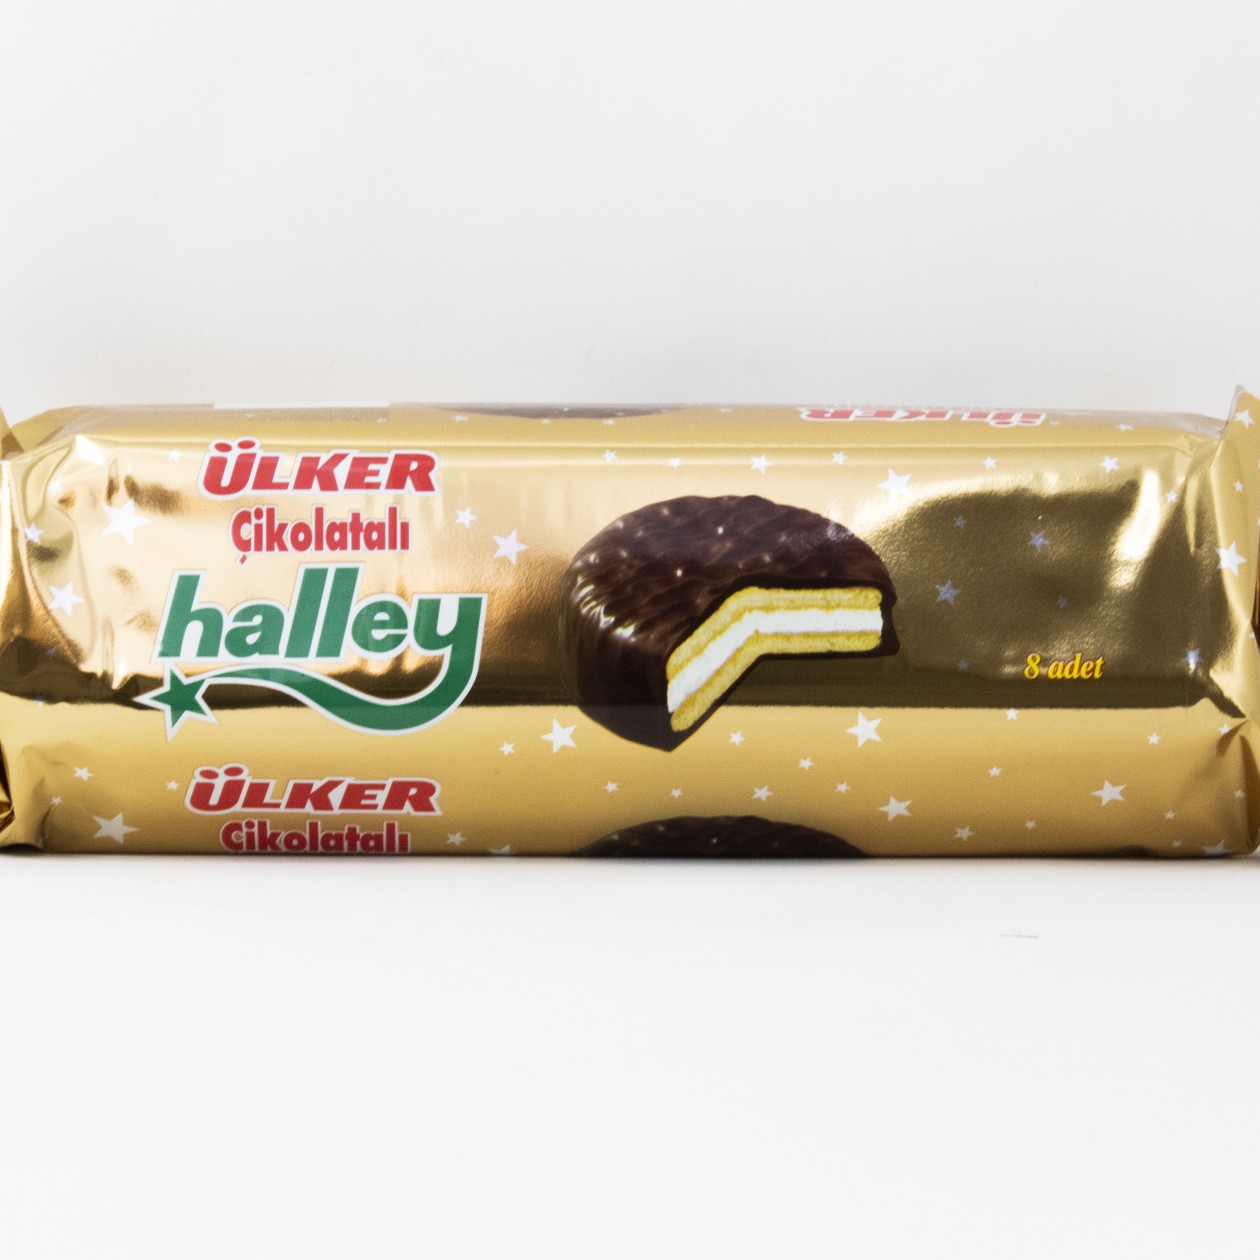 Ulker Halley Biscuit 8pck